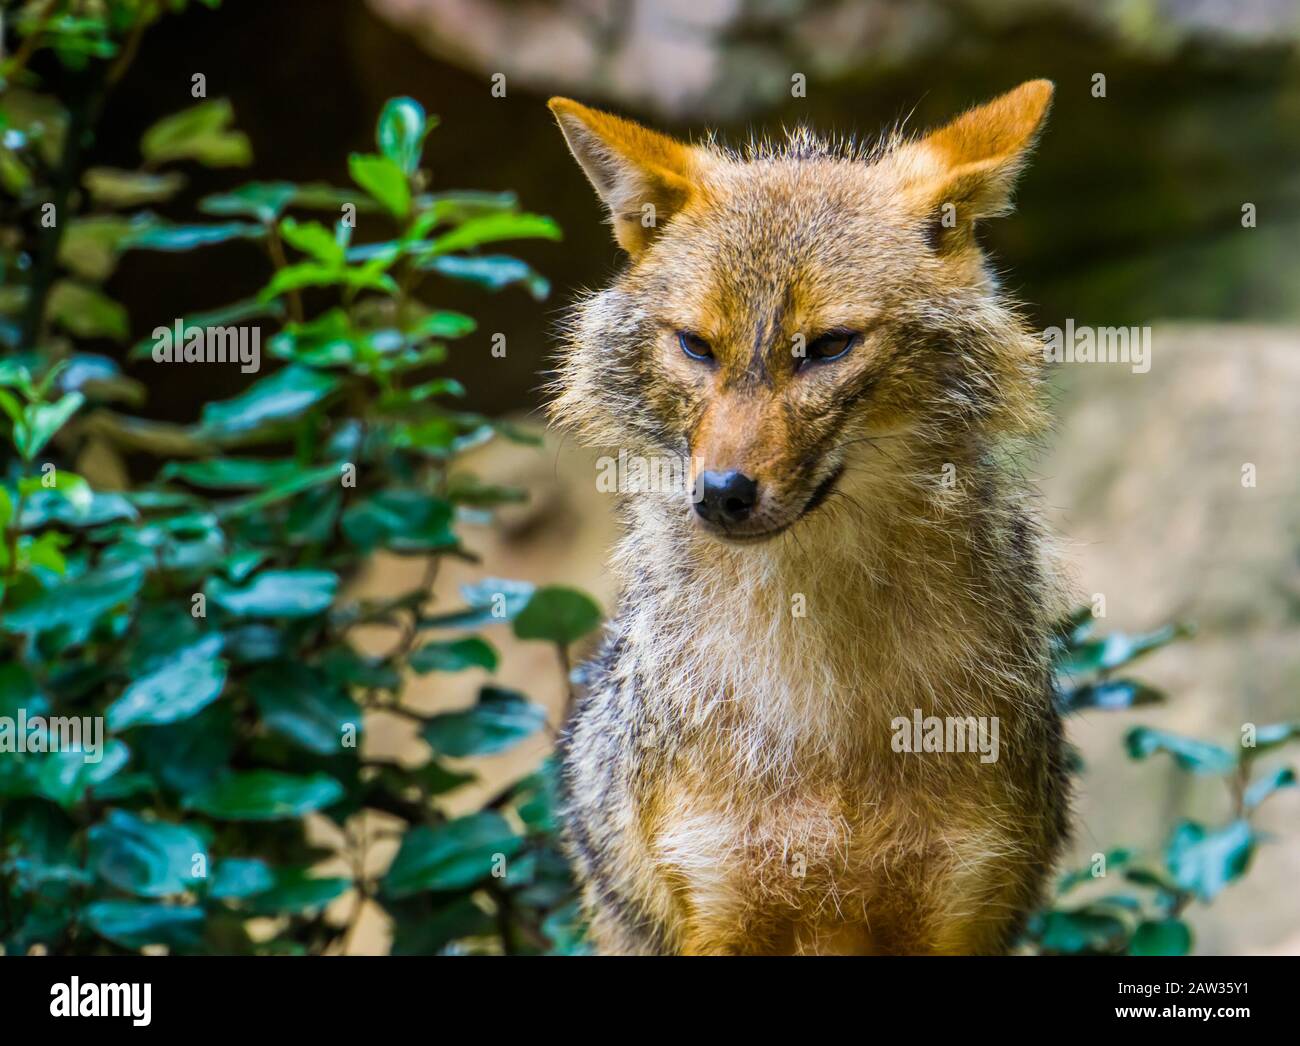 Golden jackal con su cara en closeup, especia de perros salvajes de Eurasia Foto de stock